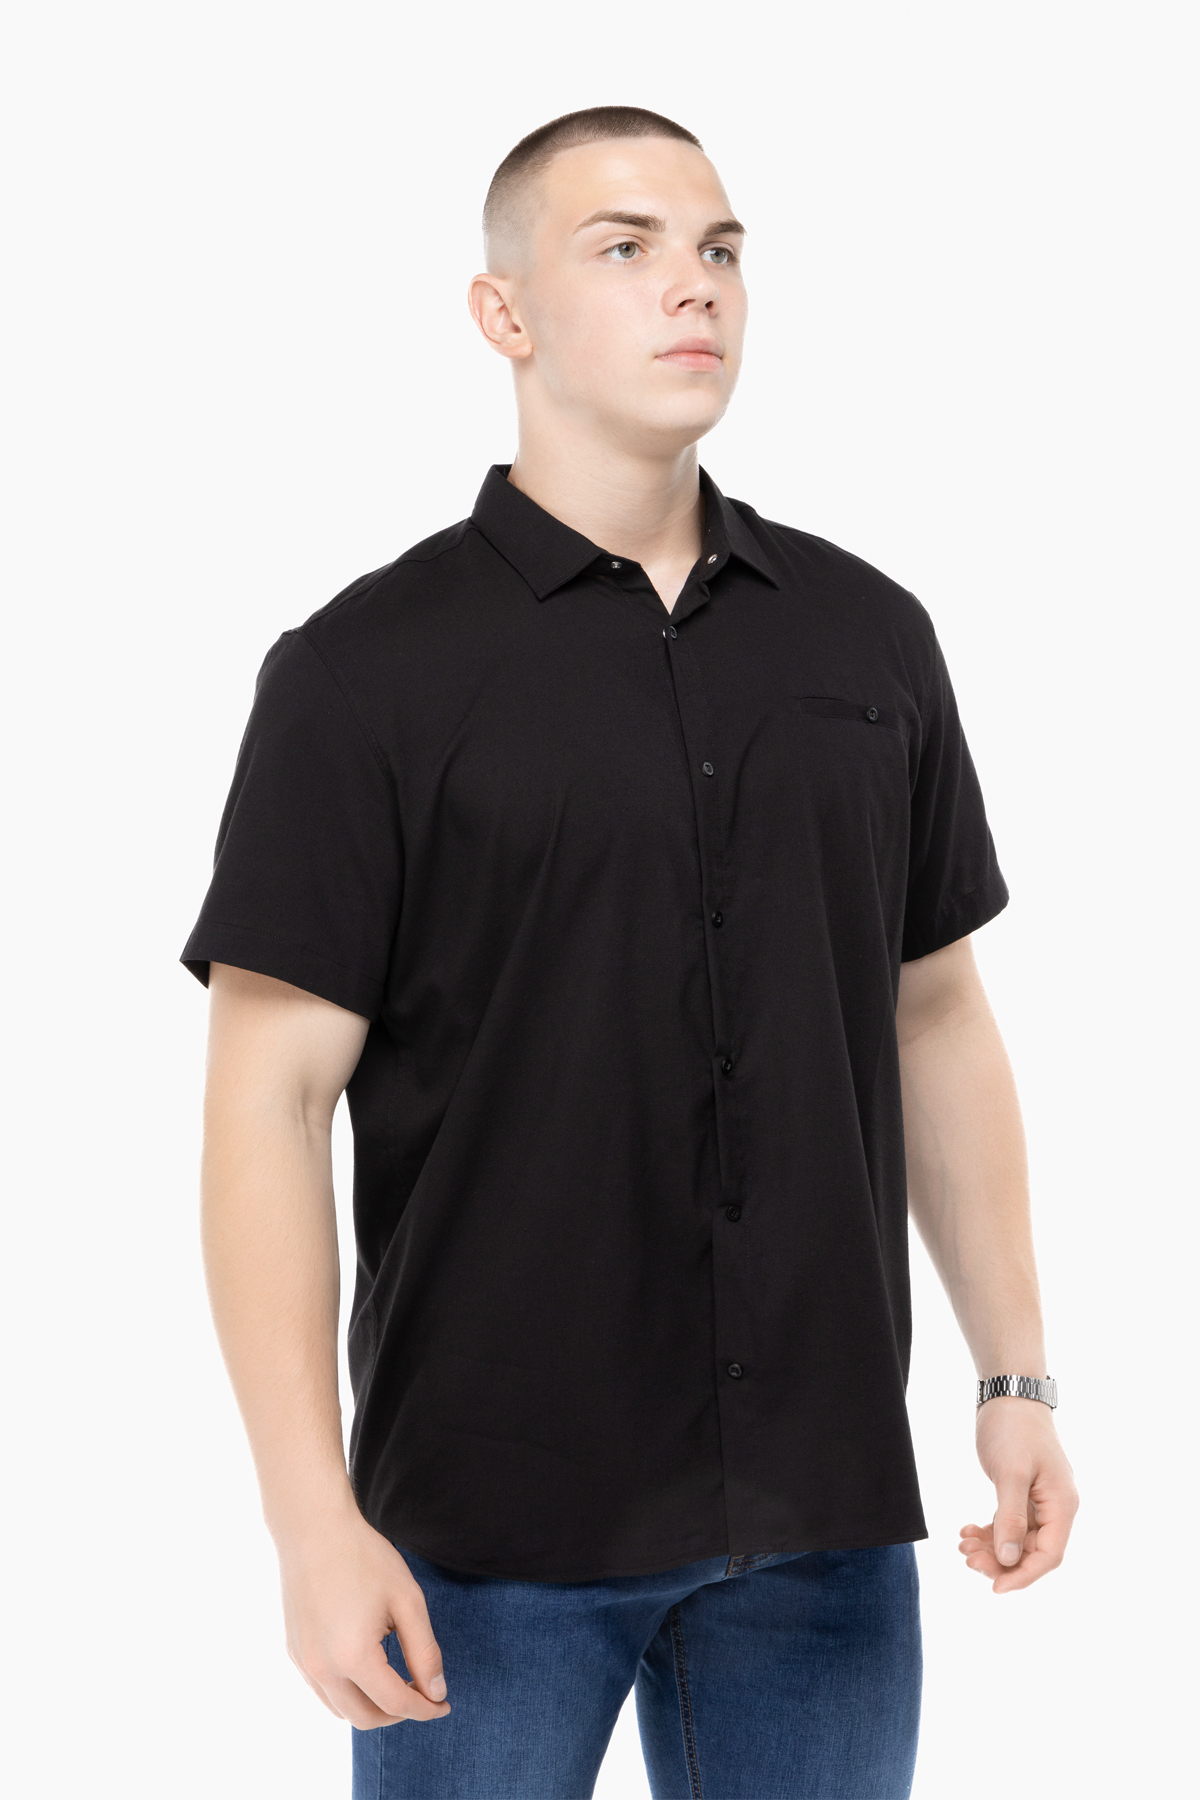 Рубашка классическая однотонная мужская Stendo 235004 6XL Черный (2000989740216)